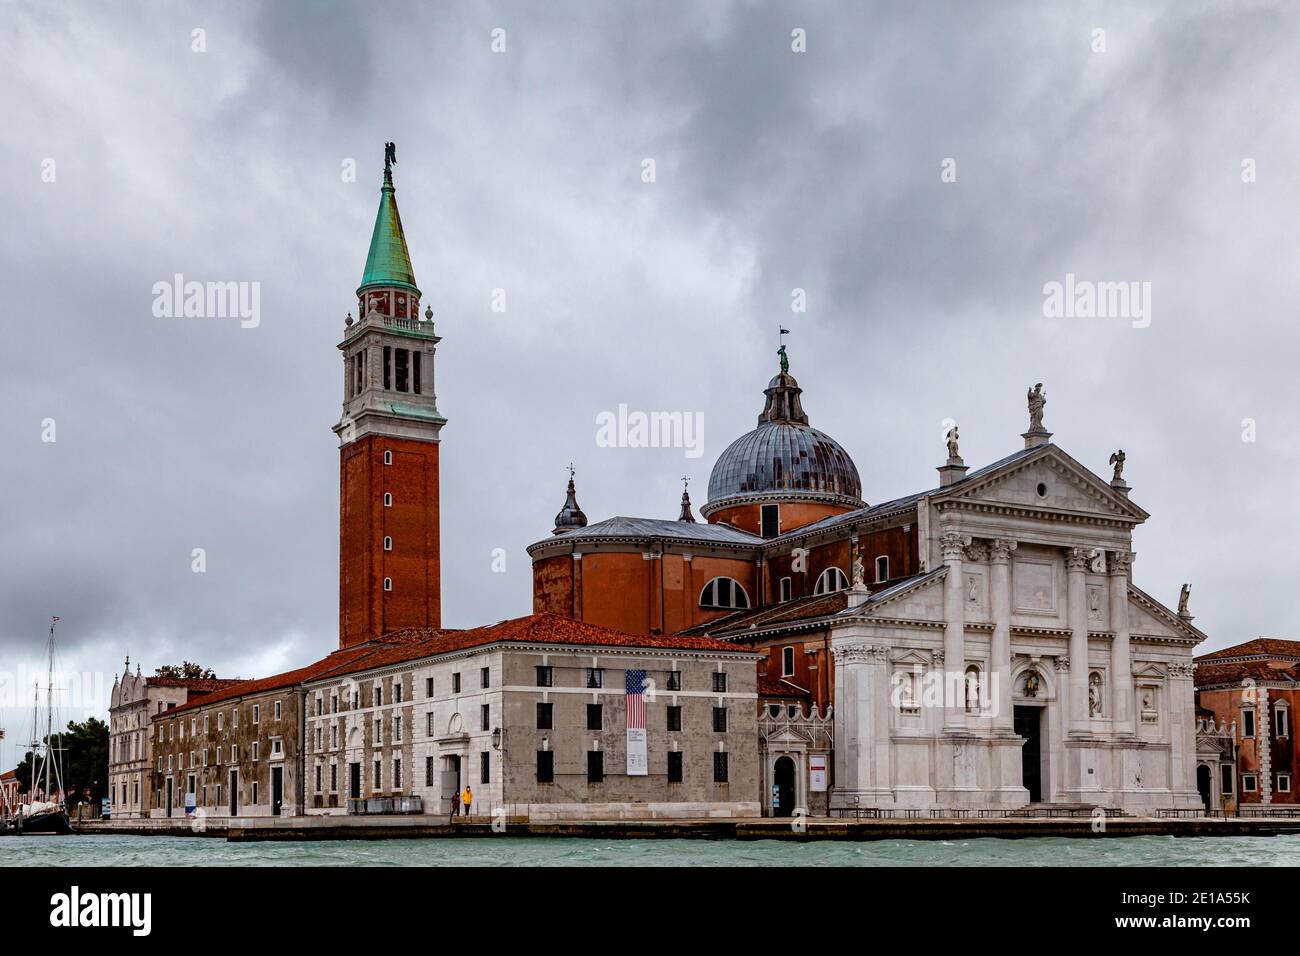 Eglise de San Giorgio Maggiore, et Tour de la cloche Giudecca, Venise, Italie. Banque D'Images